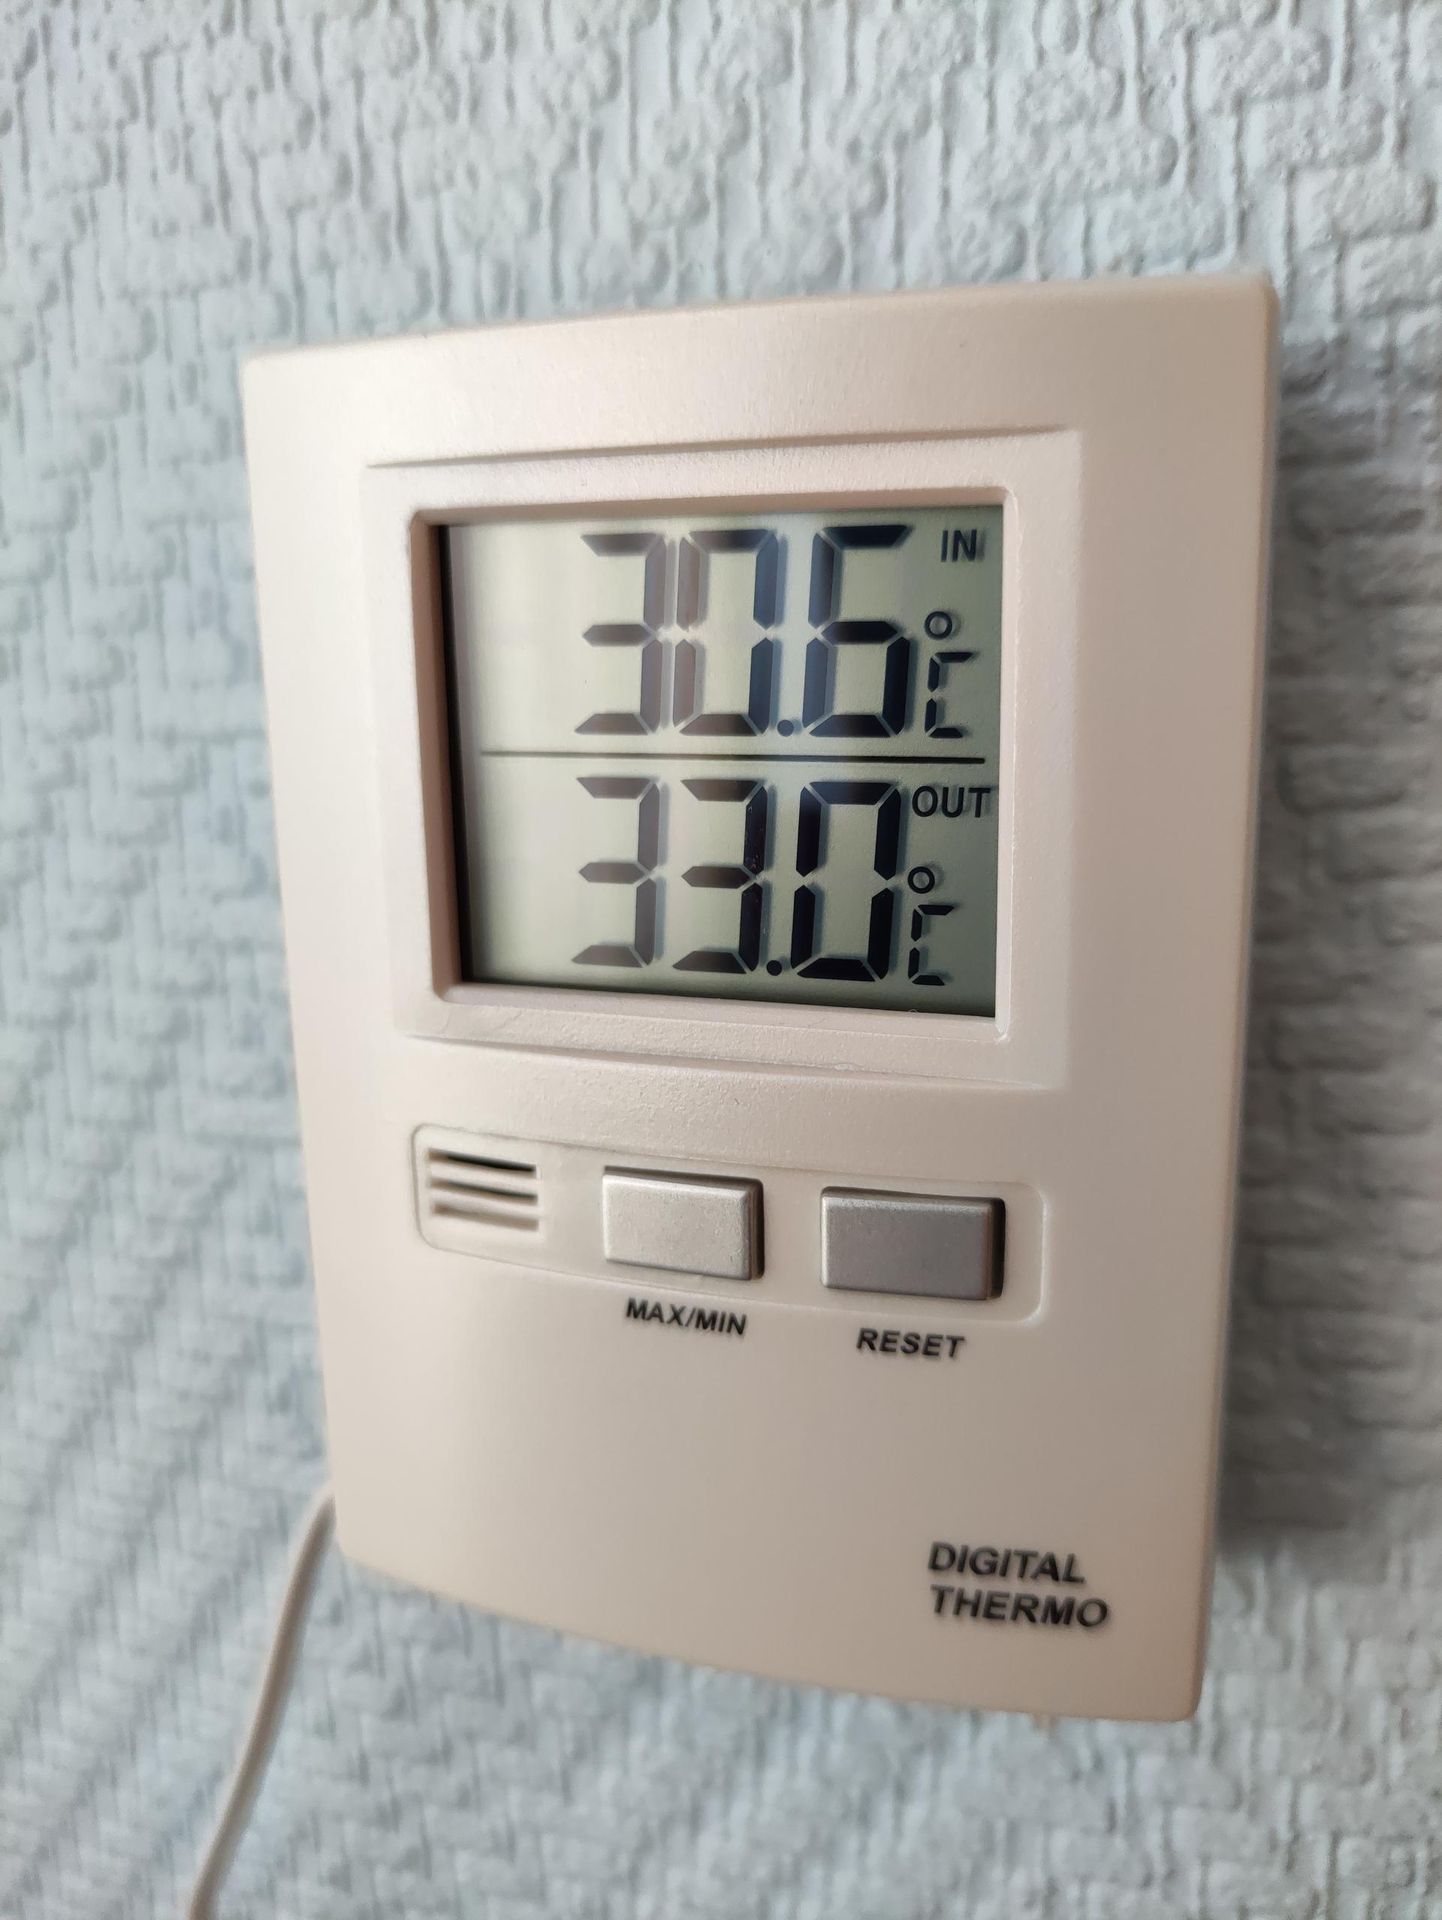 Juuni kuumatipuks mõõtis Viljand ilmajaam vilus 33 kraadi 28. juunil. Pildil on Paalalinna kortermaja termomeeter järgmisel hommikul, mil välisõhk soojenes päikese käes 33 kraadini ja toas oli 30,6 kraadi.